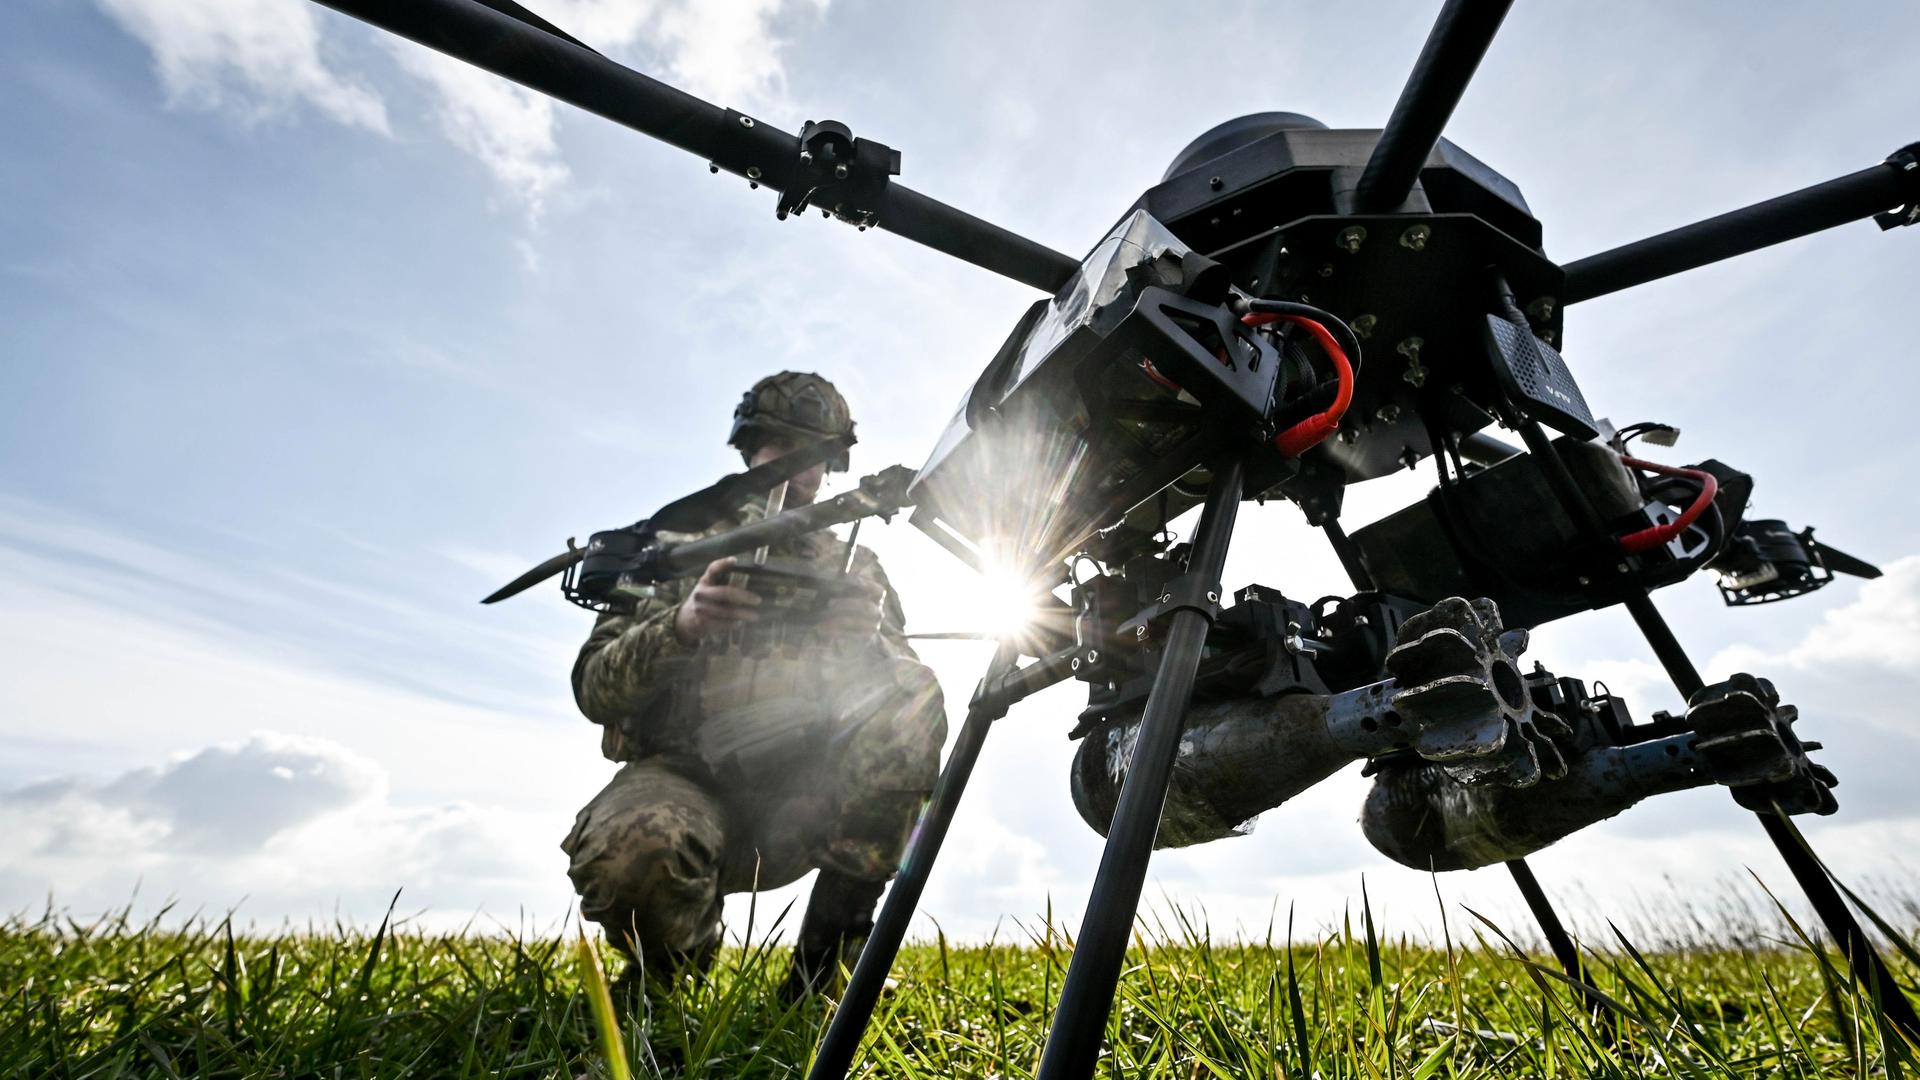 Ein Soldat startet eine Drohne, ein ukrainisches unbemanntes Kampfflugzeug, das eine Nutzlast von bis zu 15 kg hat und mit einer Wärmebildkamera ausgestattet ist.